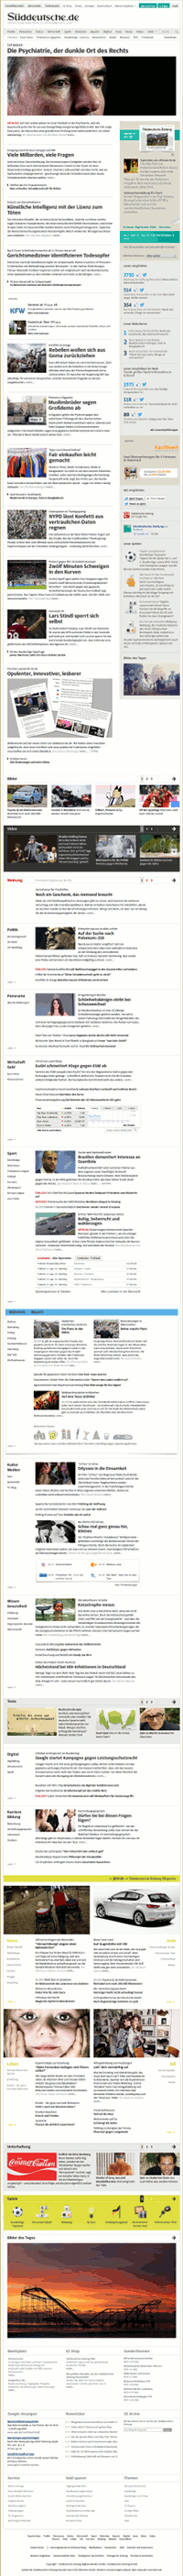 Homepage Sueddeutsche.de